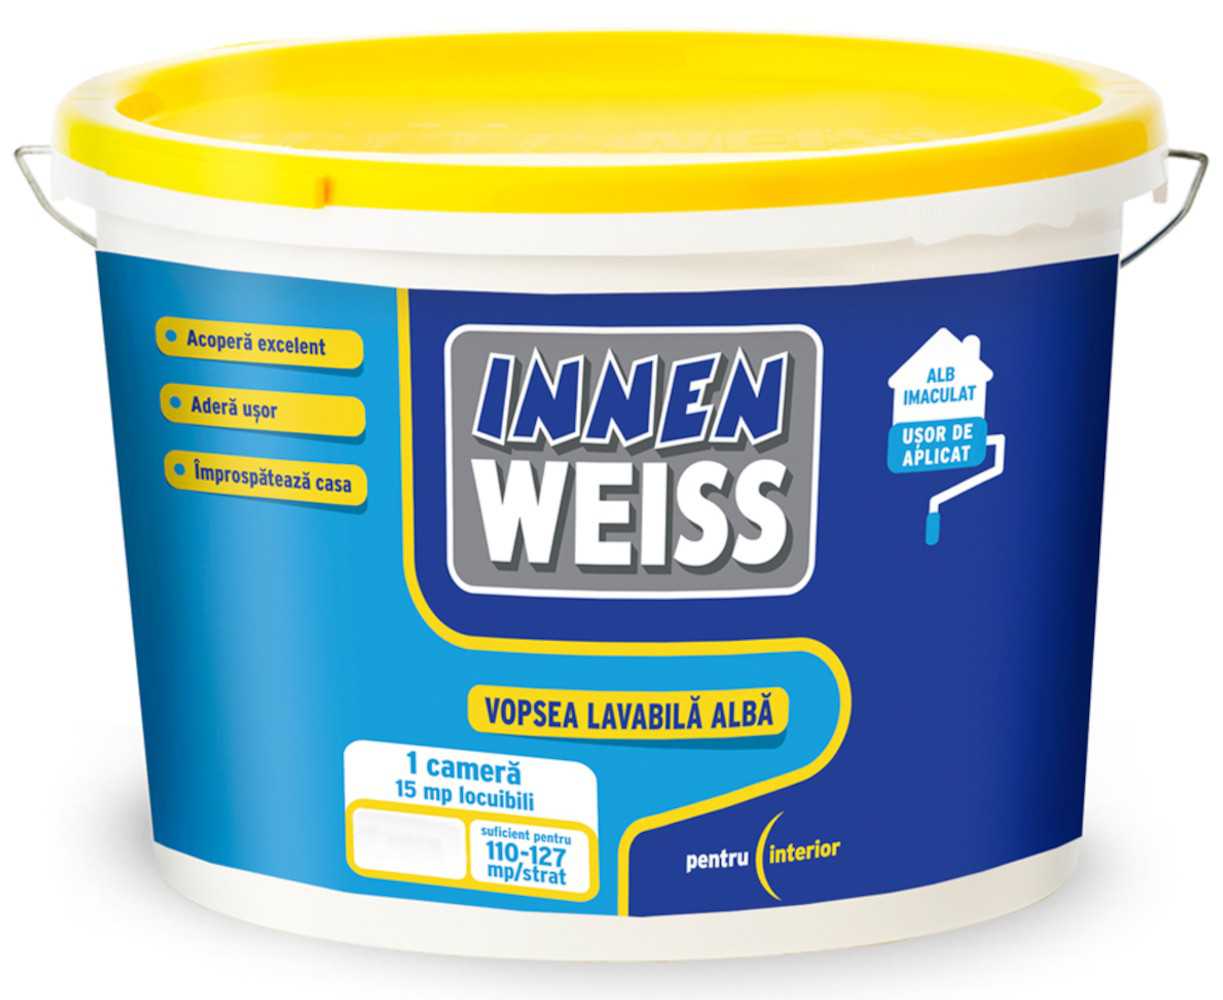 Vopsea lavabila alba interior, Innenweiss, 5 L